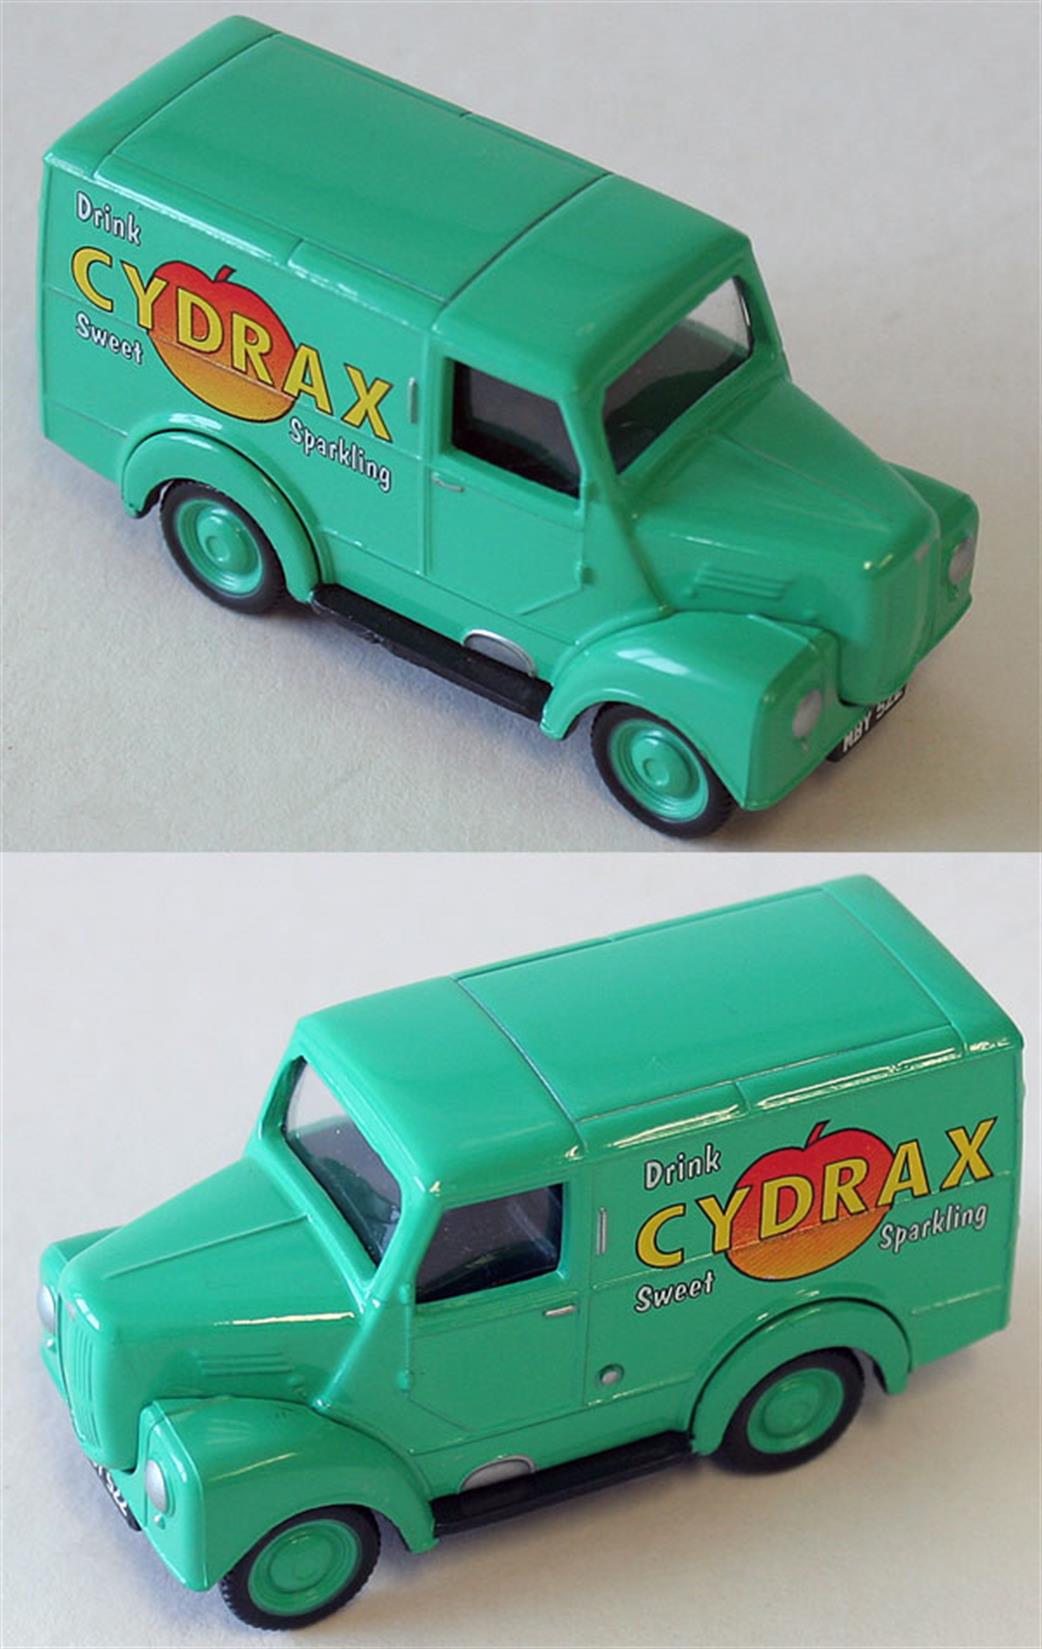 Classix Scenix 1/76 EM76686 Trojan 20cwt Van Cydrax